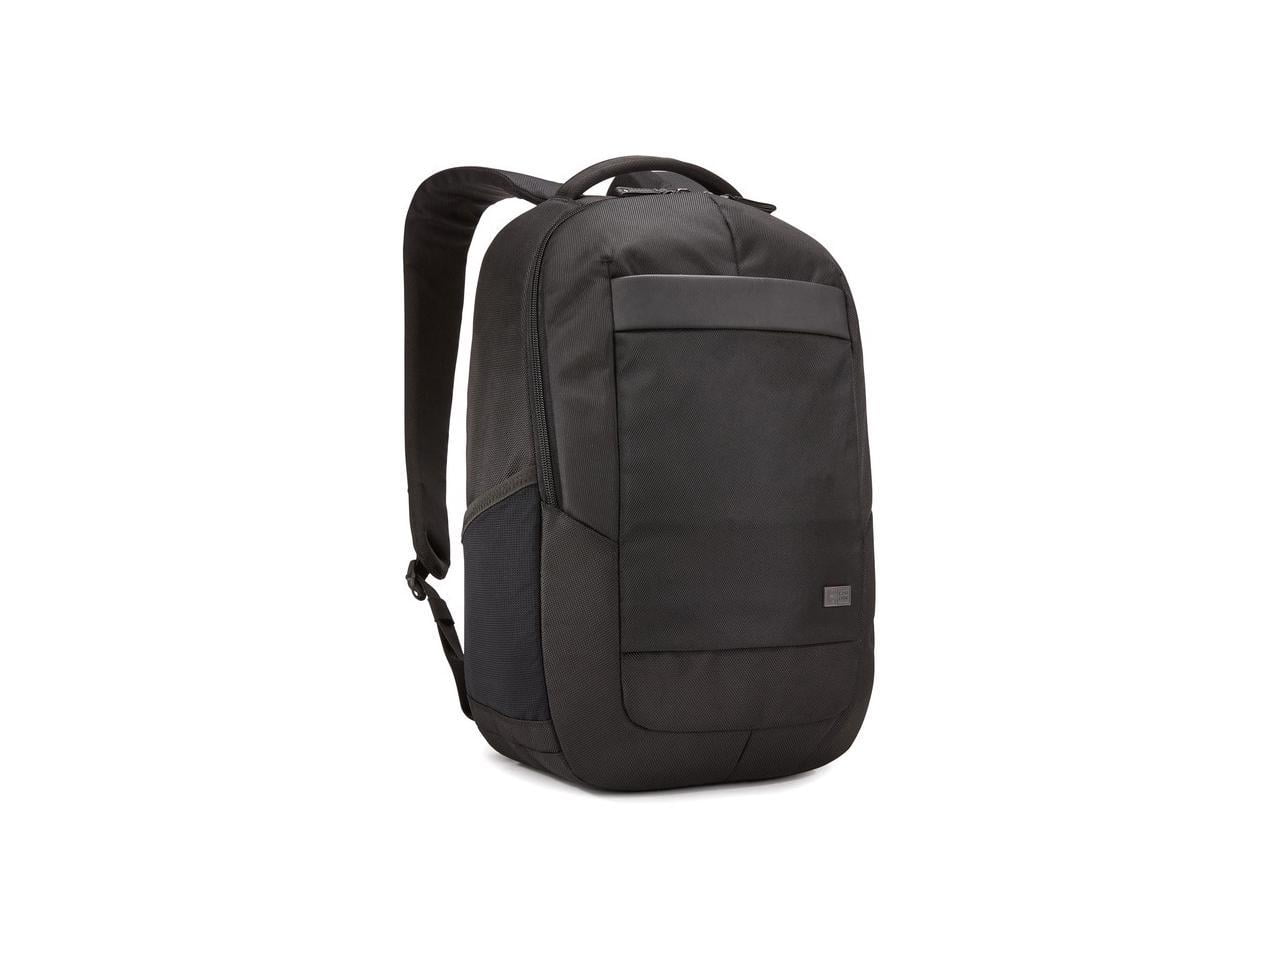 Buy Case LOGIC Laptop Backpack Black Nylon [Rbp-217] Online - Best Price  Case LOGIC Laptop Backpack Black Nylon [Rbp-217] - Justdial Shop Online.